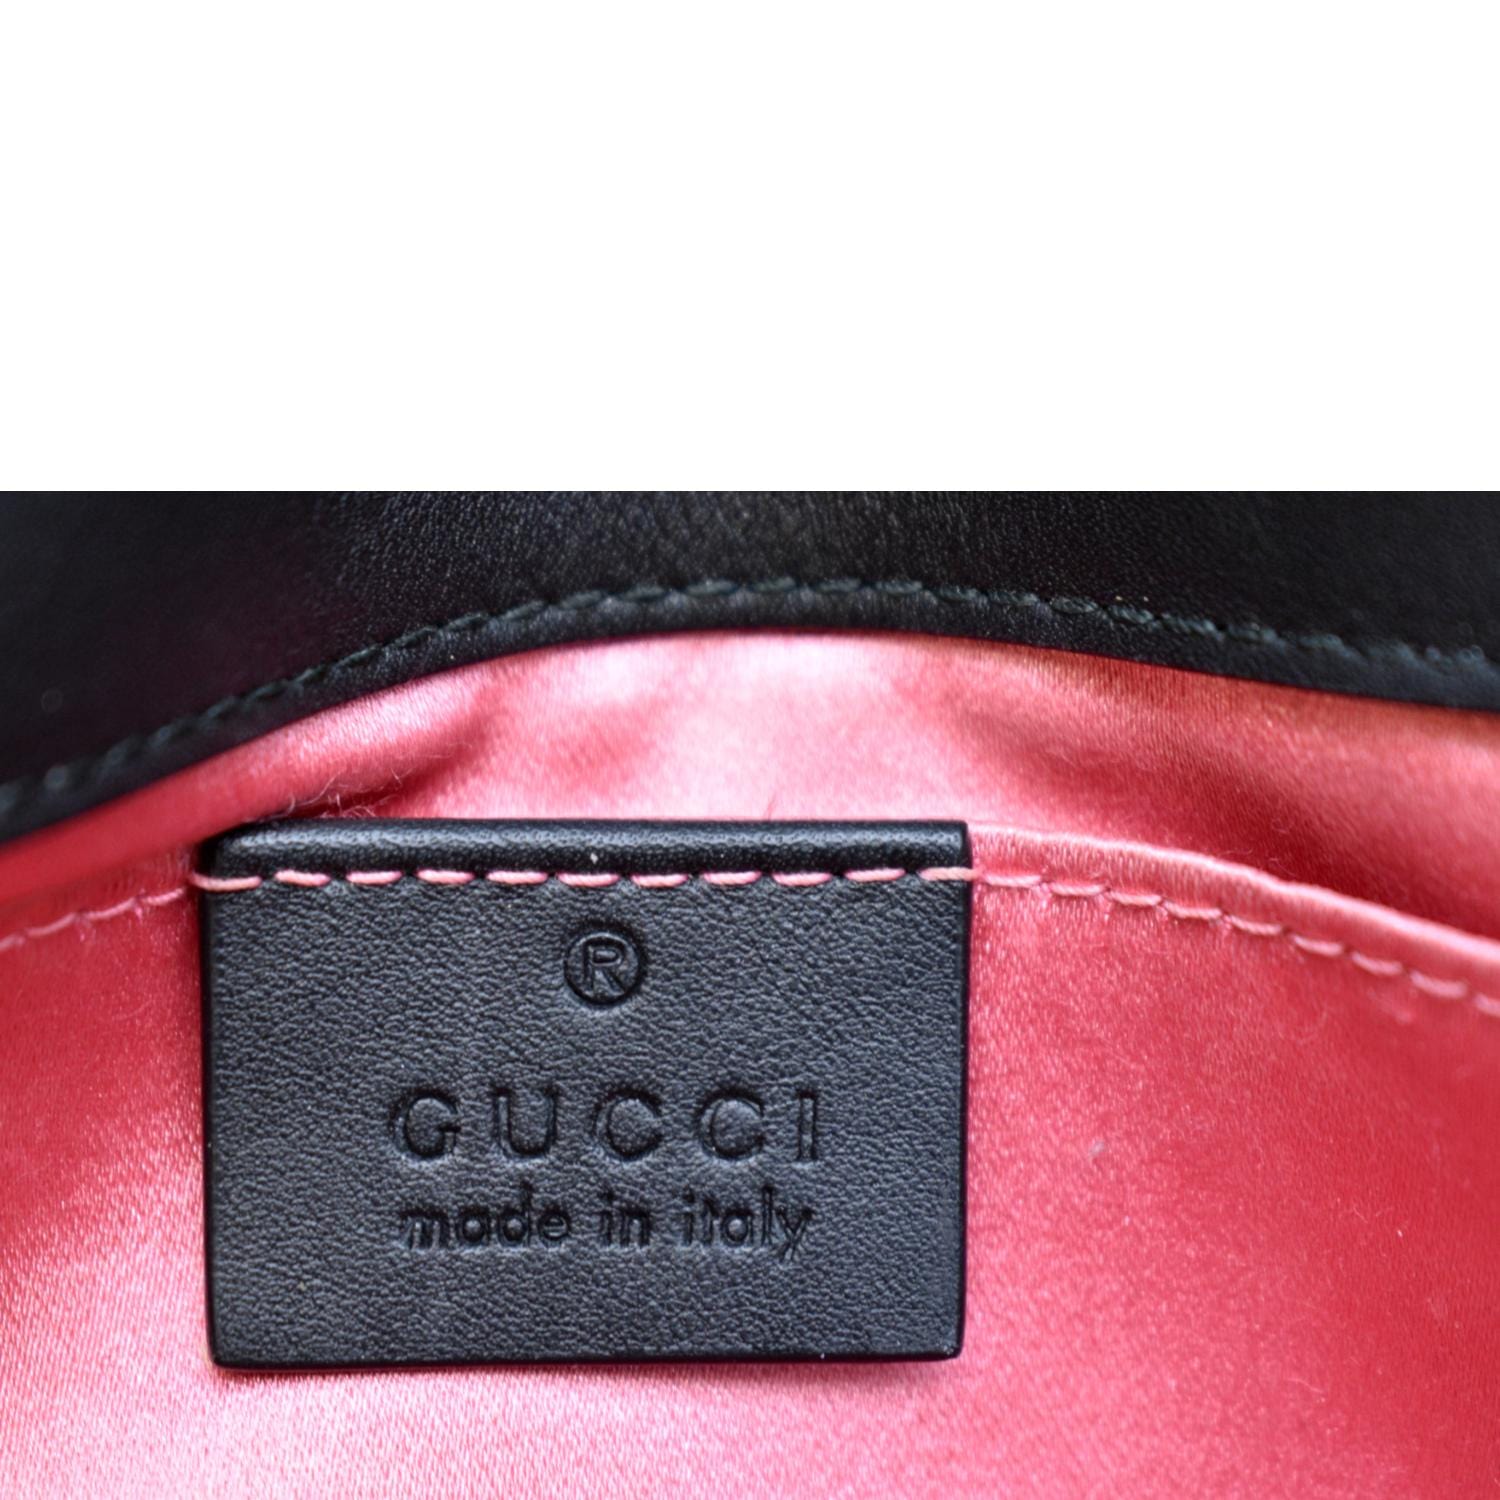 Gucci Gg Marmont Mini Velvet Shoulder Bag In Pink